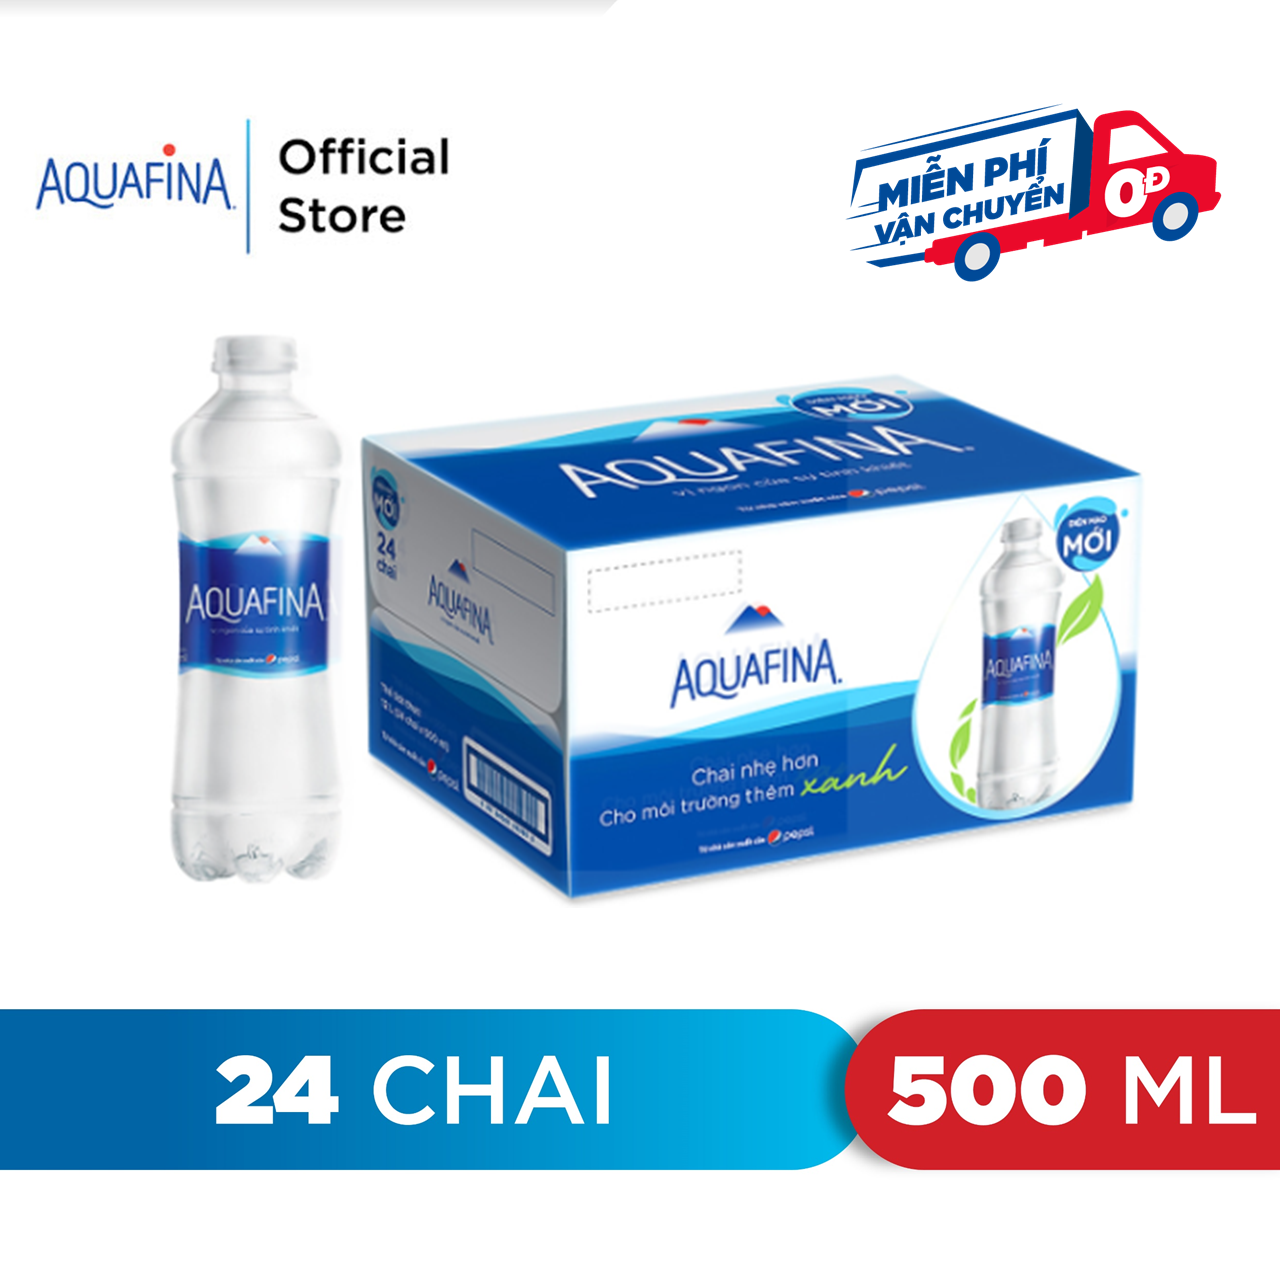 hcm - freeship 0đ thùng 24 chai nước tinh khiết aquafina 500ml chai 1